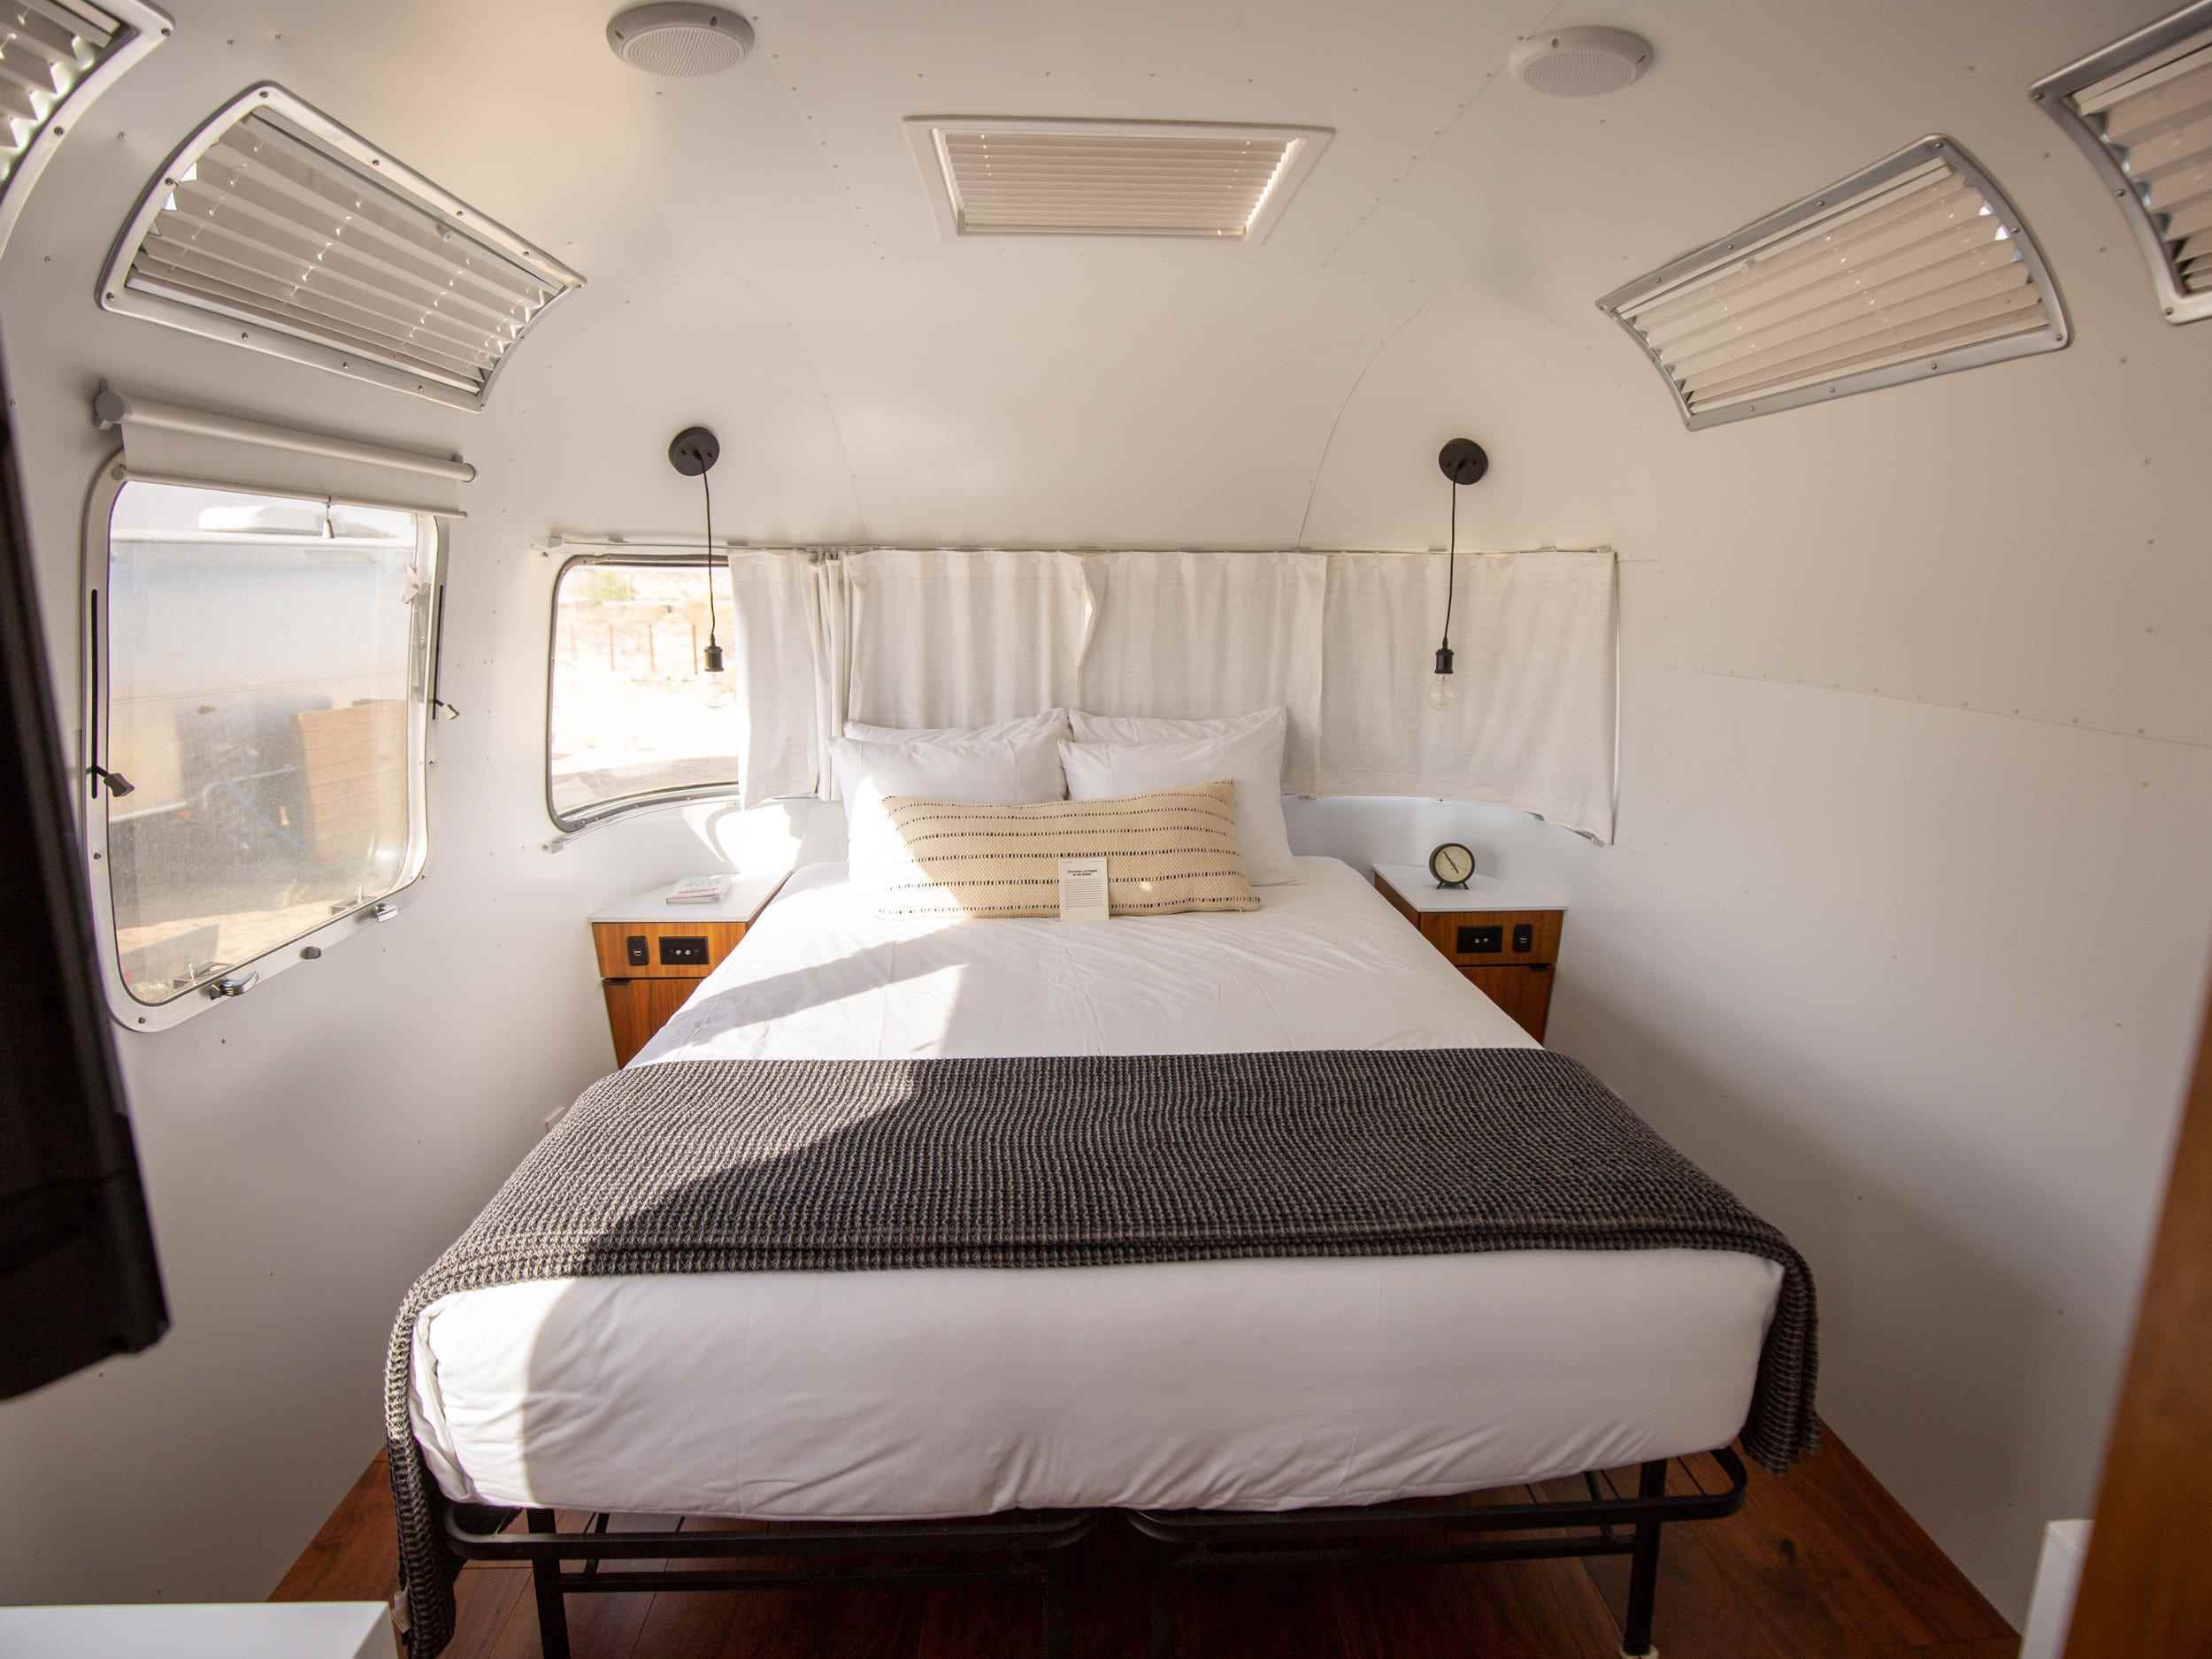 Ein Schlafzimmer im Airsteram-Wohnwagen von Autocamp Joshua Tree mit weißen Akzenten, einem Bett mit Kissen und Vorhängen über den Fenstern.